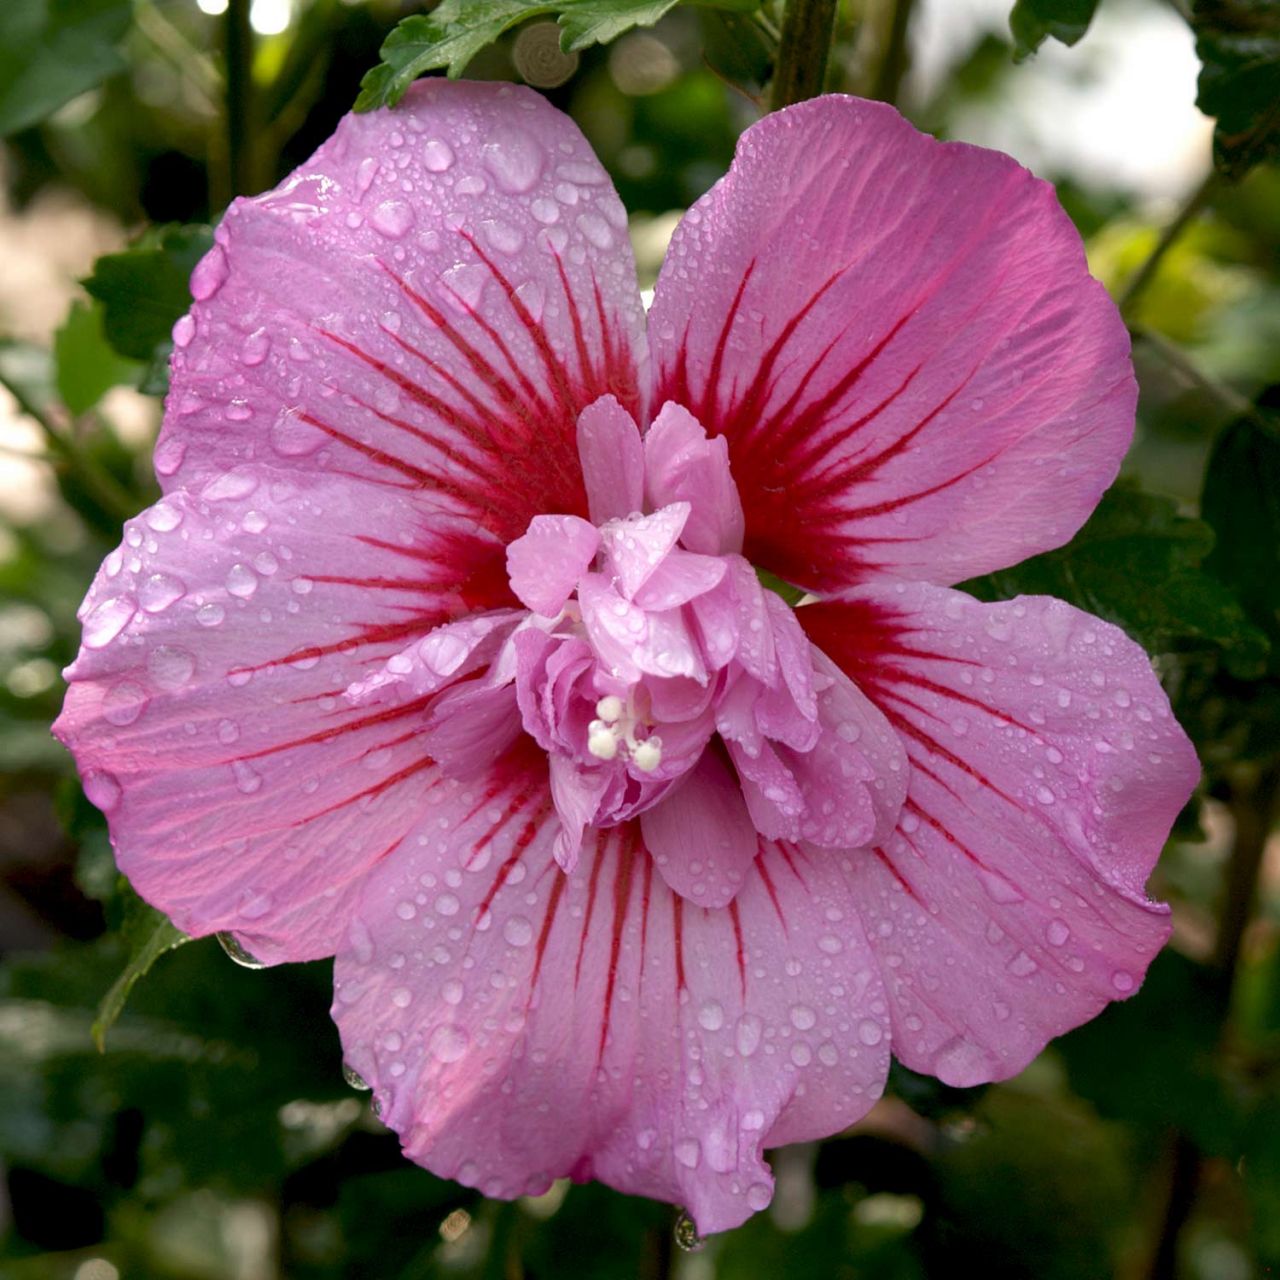 Kategorie <b>Blütensträucher und Ziergehölze </b> - Garteneibisch 'Maike' - Hibiskus - Hibiscus syriacus 'Maike'